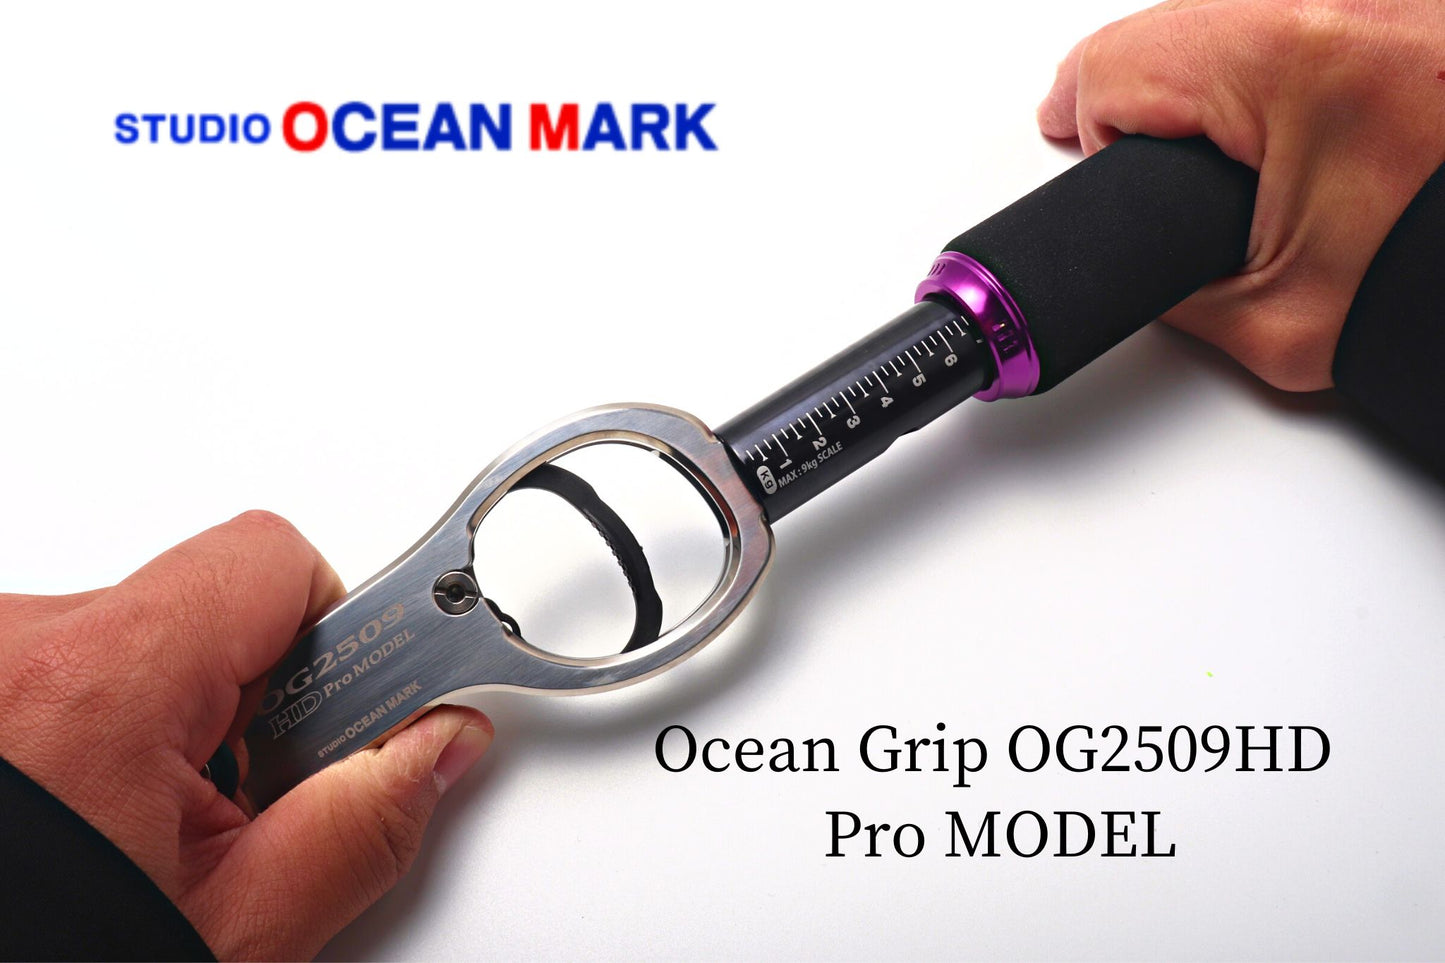 Ocean Grip OG2509HD Pro MODEL